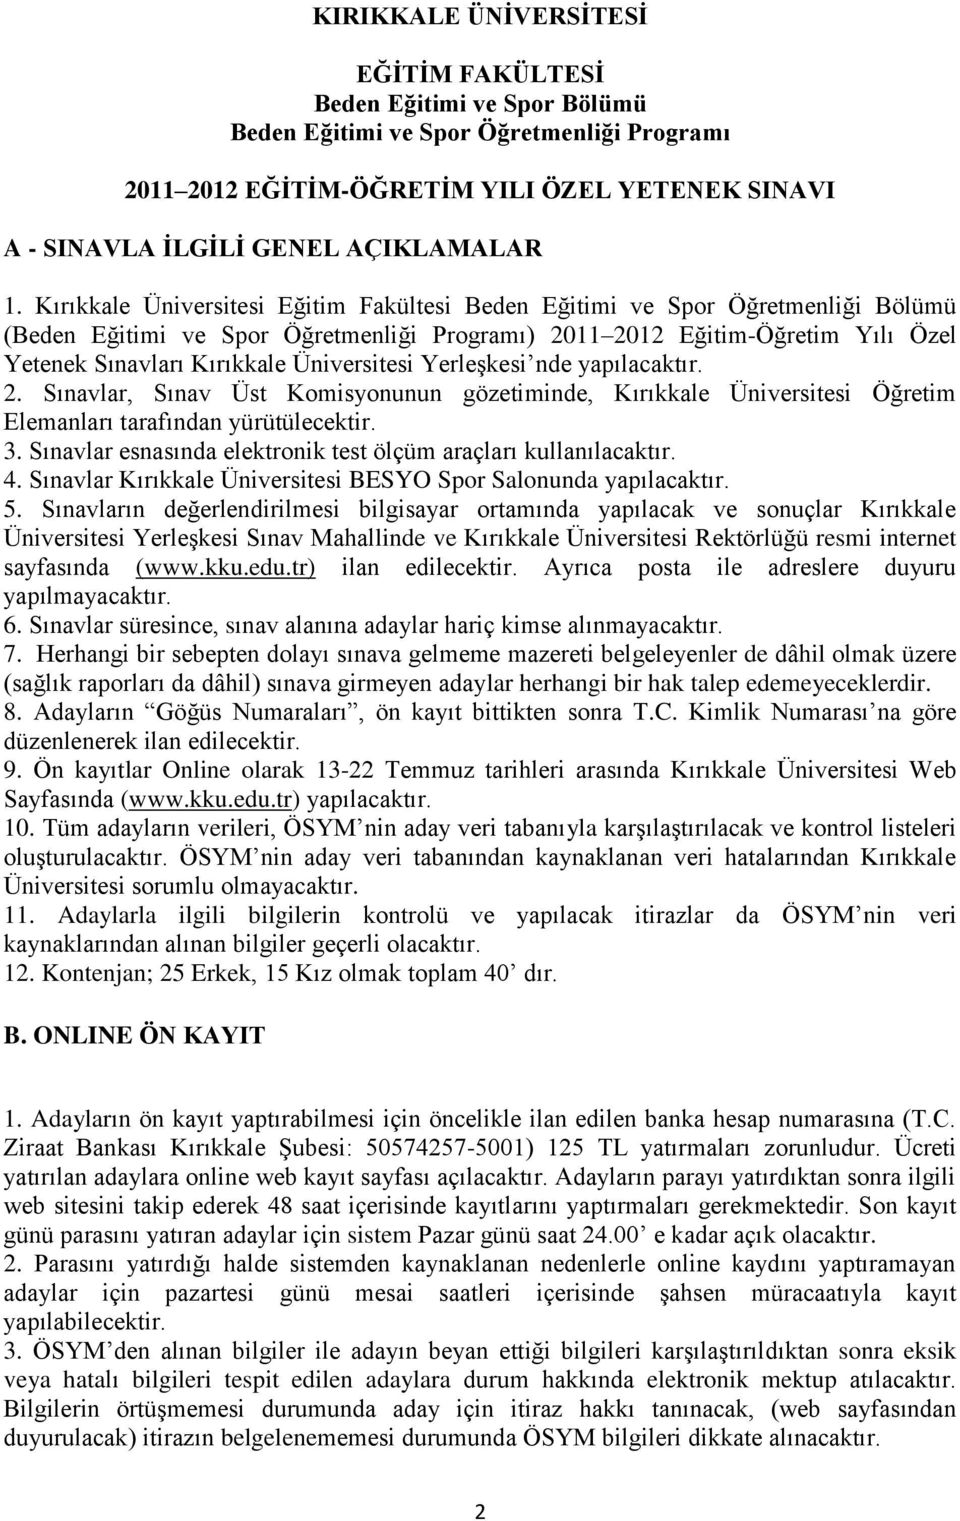 2. Sınavlar, Sınav Üst Komisyonunun gözetiminde, Kırıkkale Üniversitesi Öğretim Elemanları tarafından yürütülecektir. 3. Sınavlar esnasında elektronik test ölçüm araçları kullanılacaktır. 4.